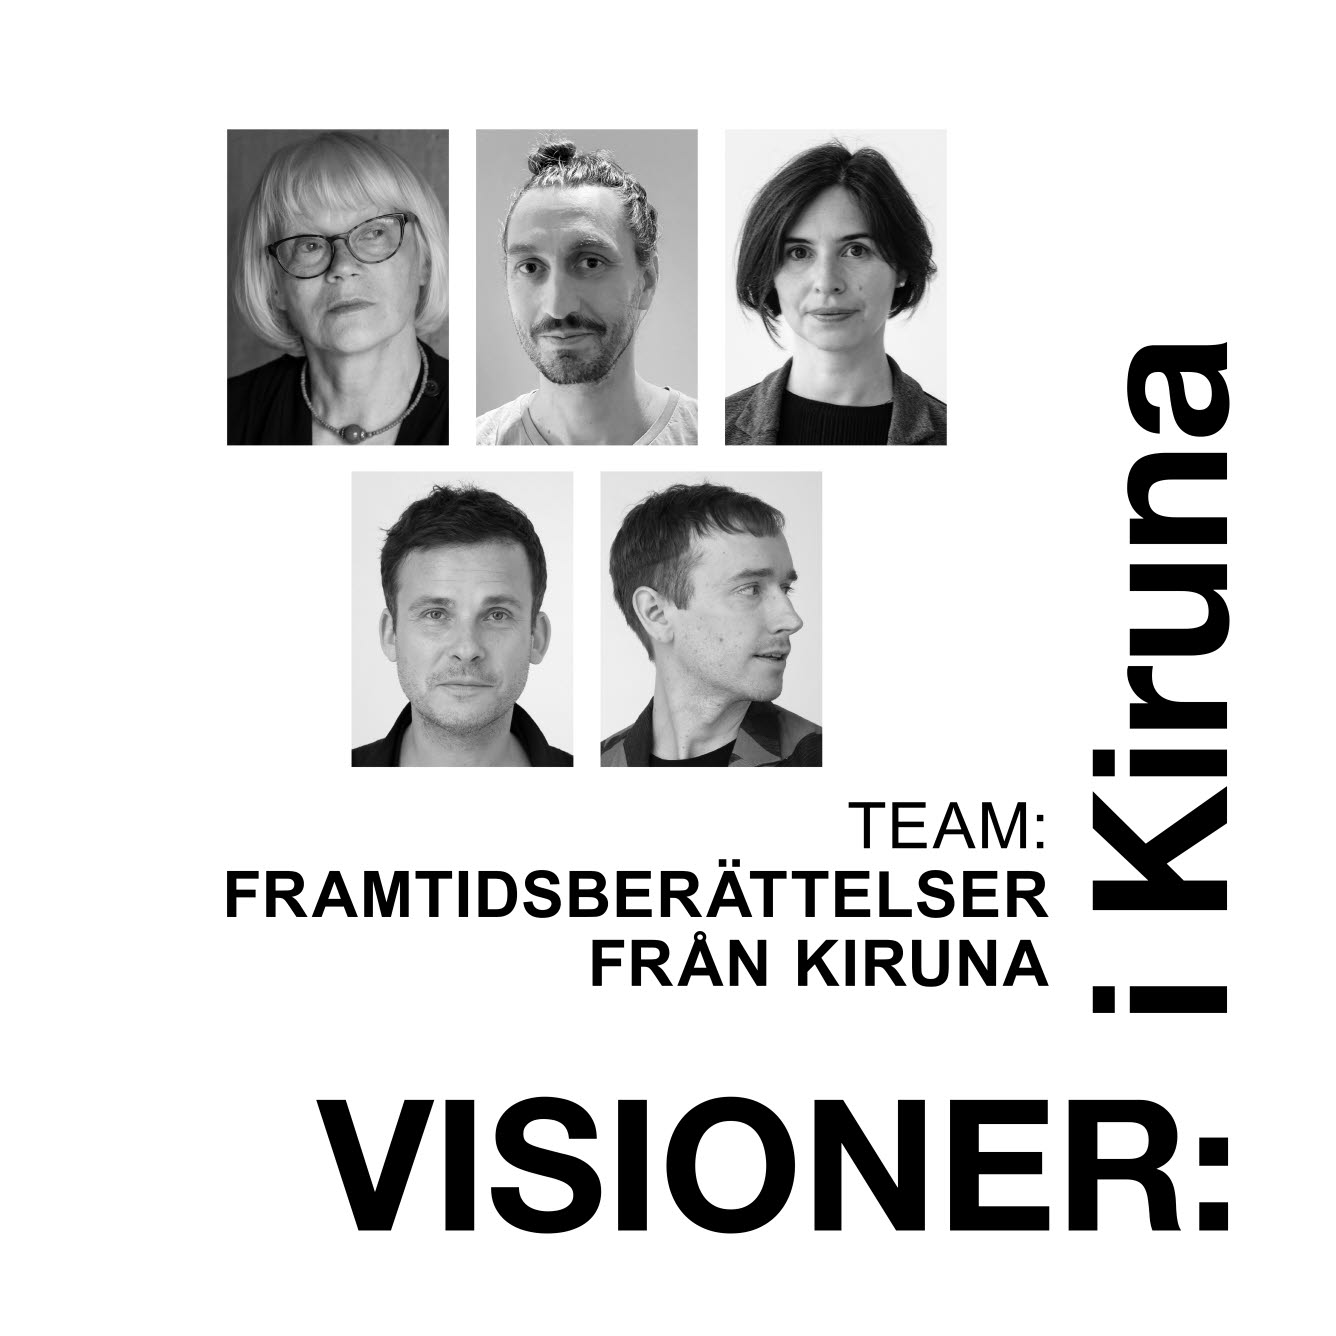 Team Framtidsberättelser från Kiruna bestående av fem personer.